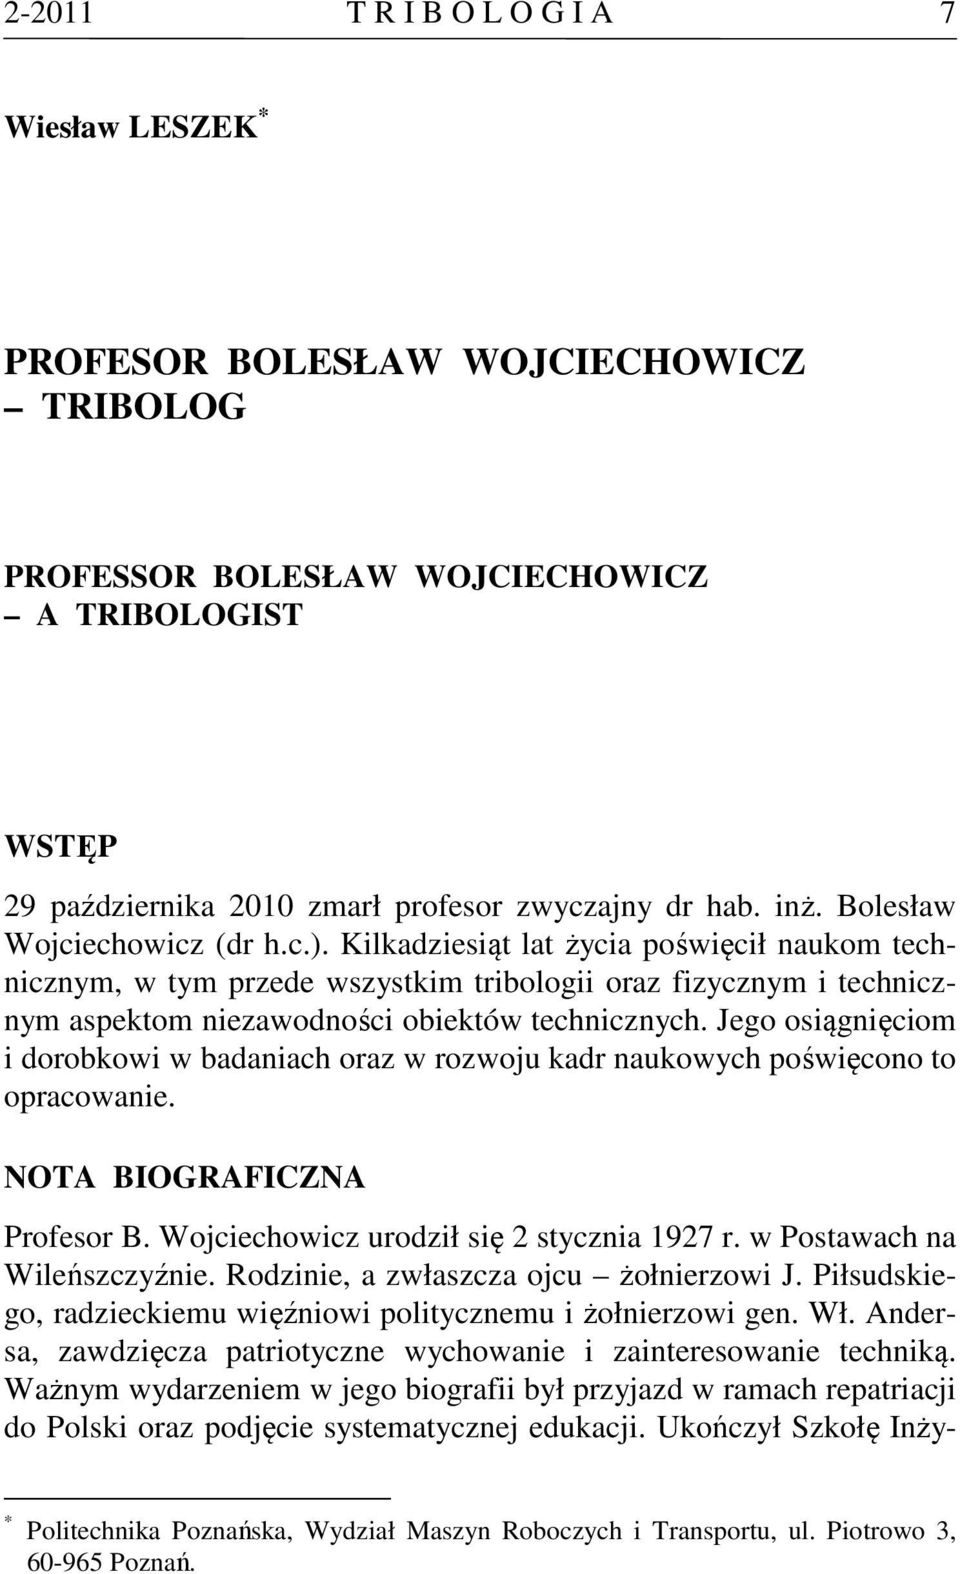 Jego osiągnięciom i dorobkowi w badaniach oraz w rozwoju kadr naukowych poświęcono to opracowanie. NOTA BIOGRAFICZNA Profesor B. Wojciechowicz urodził się 2 stycznia 1927 r.